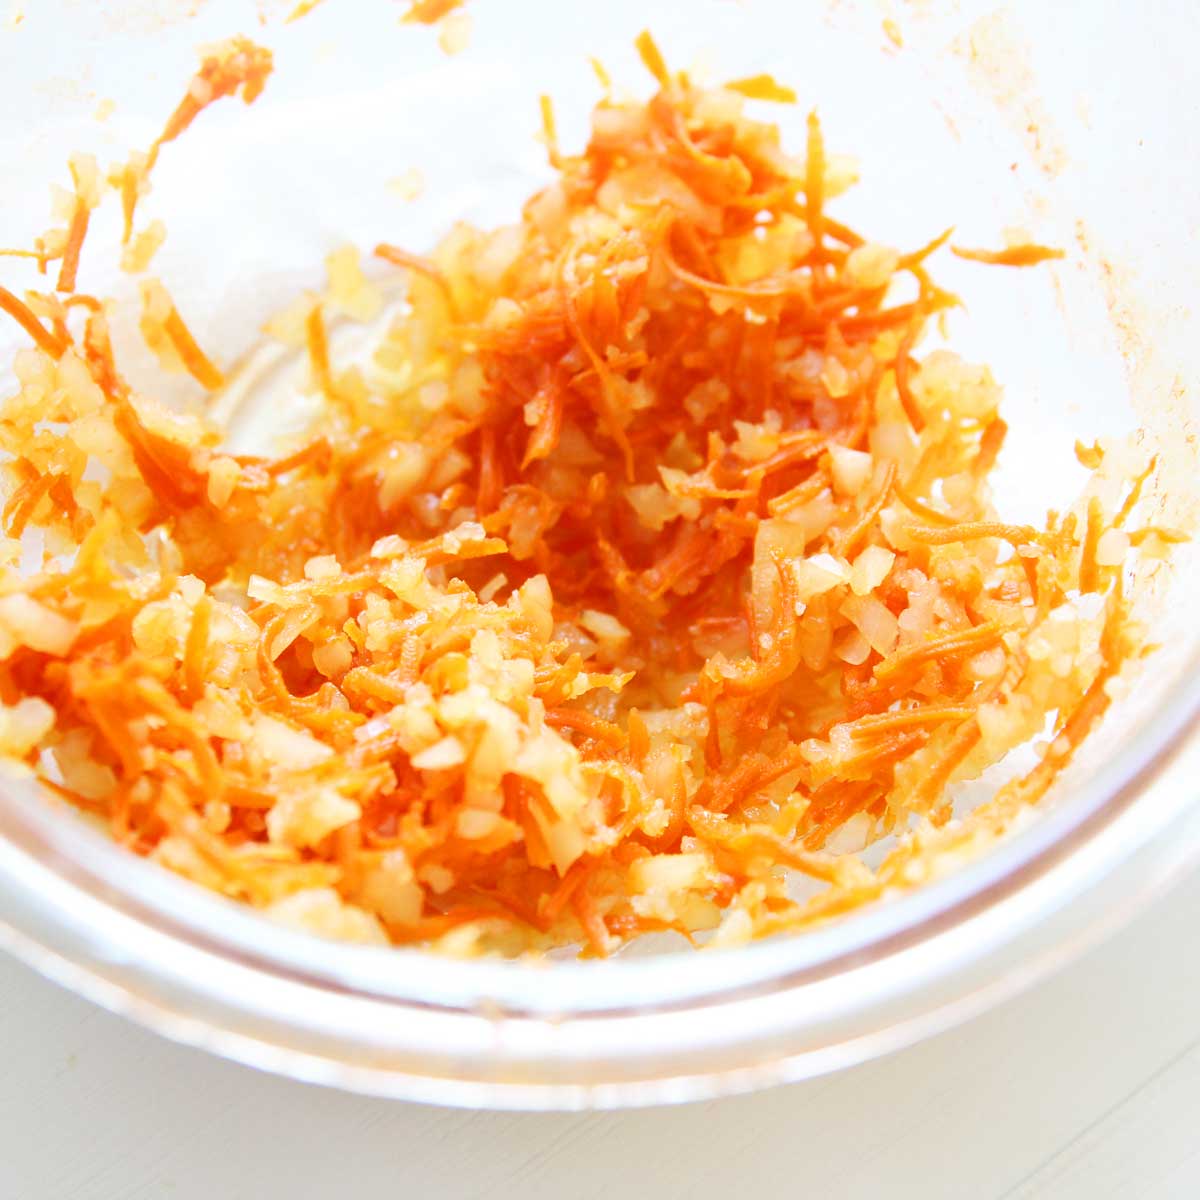 Cauliflower & Carrot Protein Balls - Healthy Energy Bites that Taste like Carrot Cake! - Cauliflower & Carrot Protein Balls